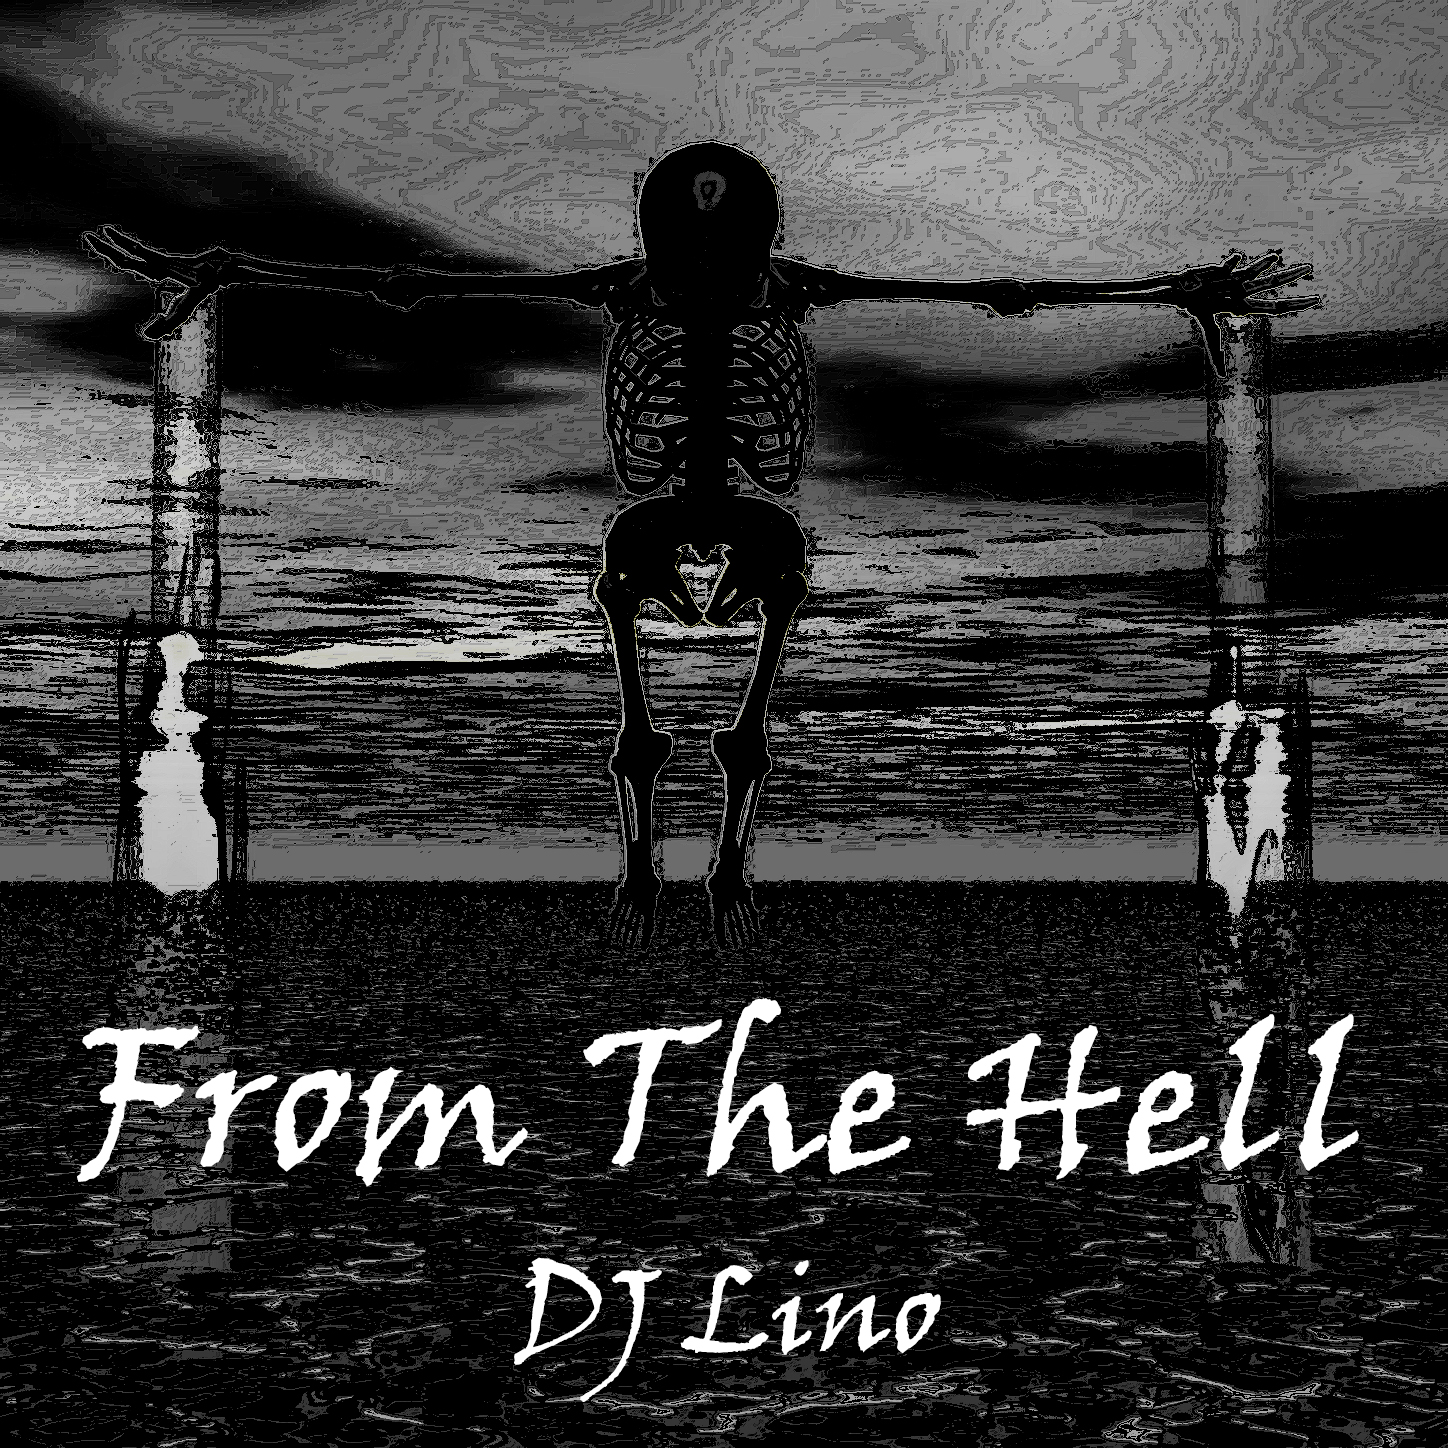 앨범자켓.jpg : Lino 2013 Original Tracks (Continuous DJ Mix)